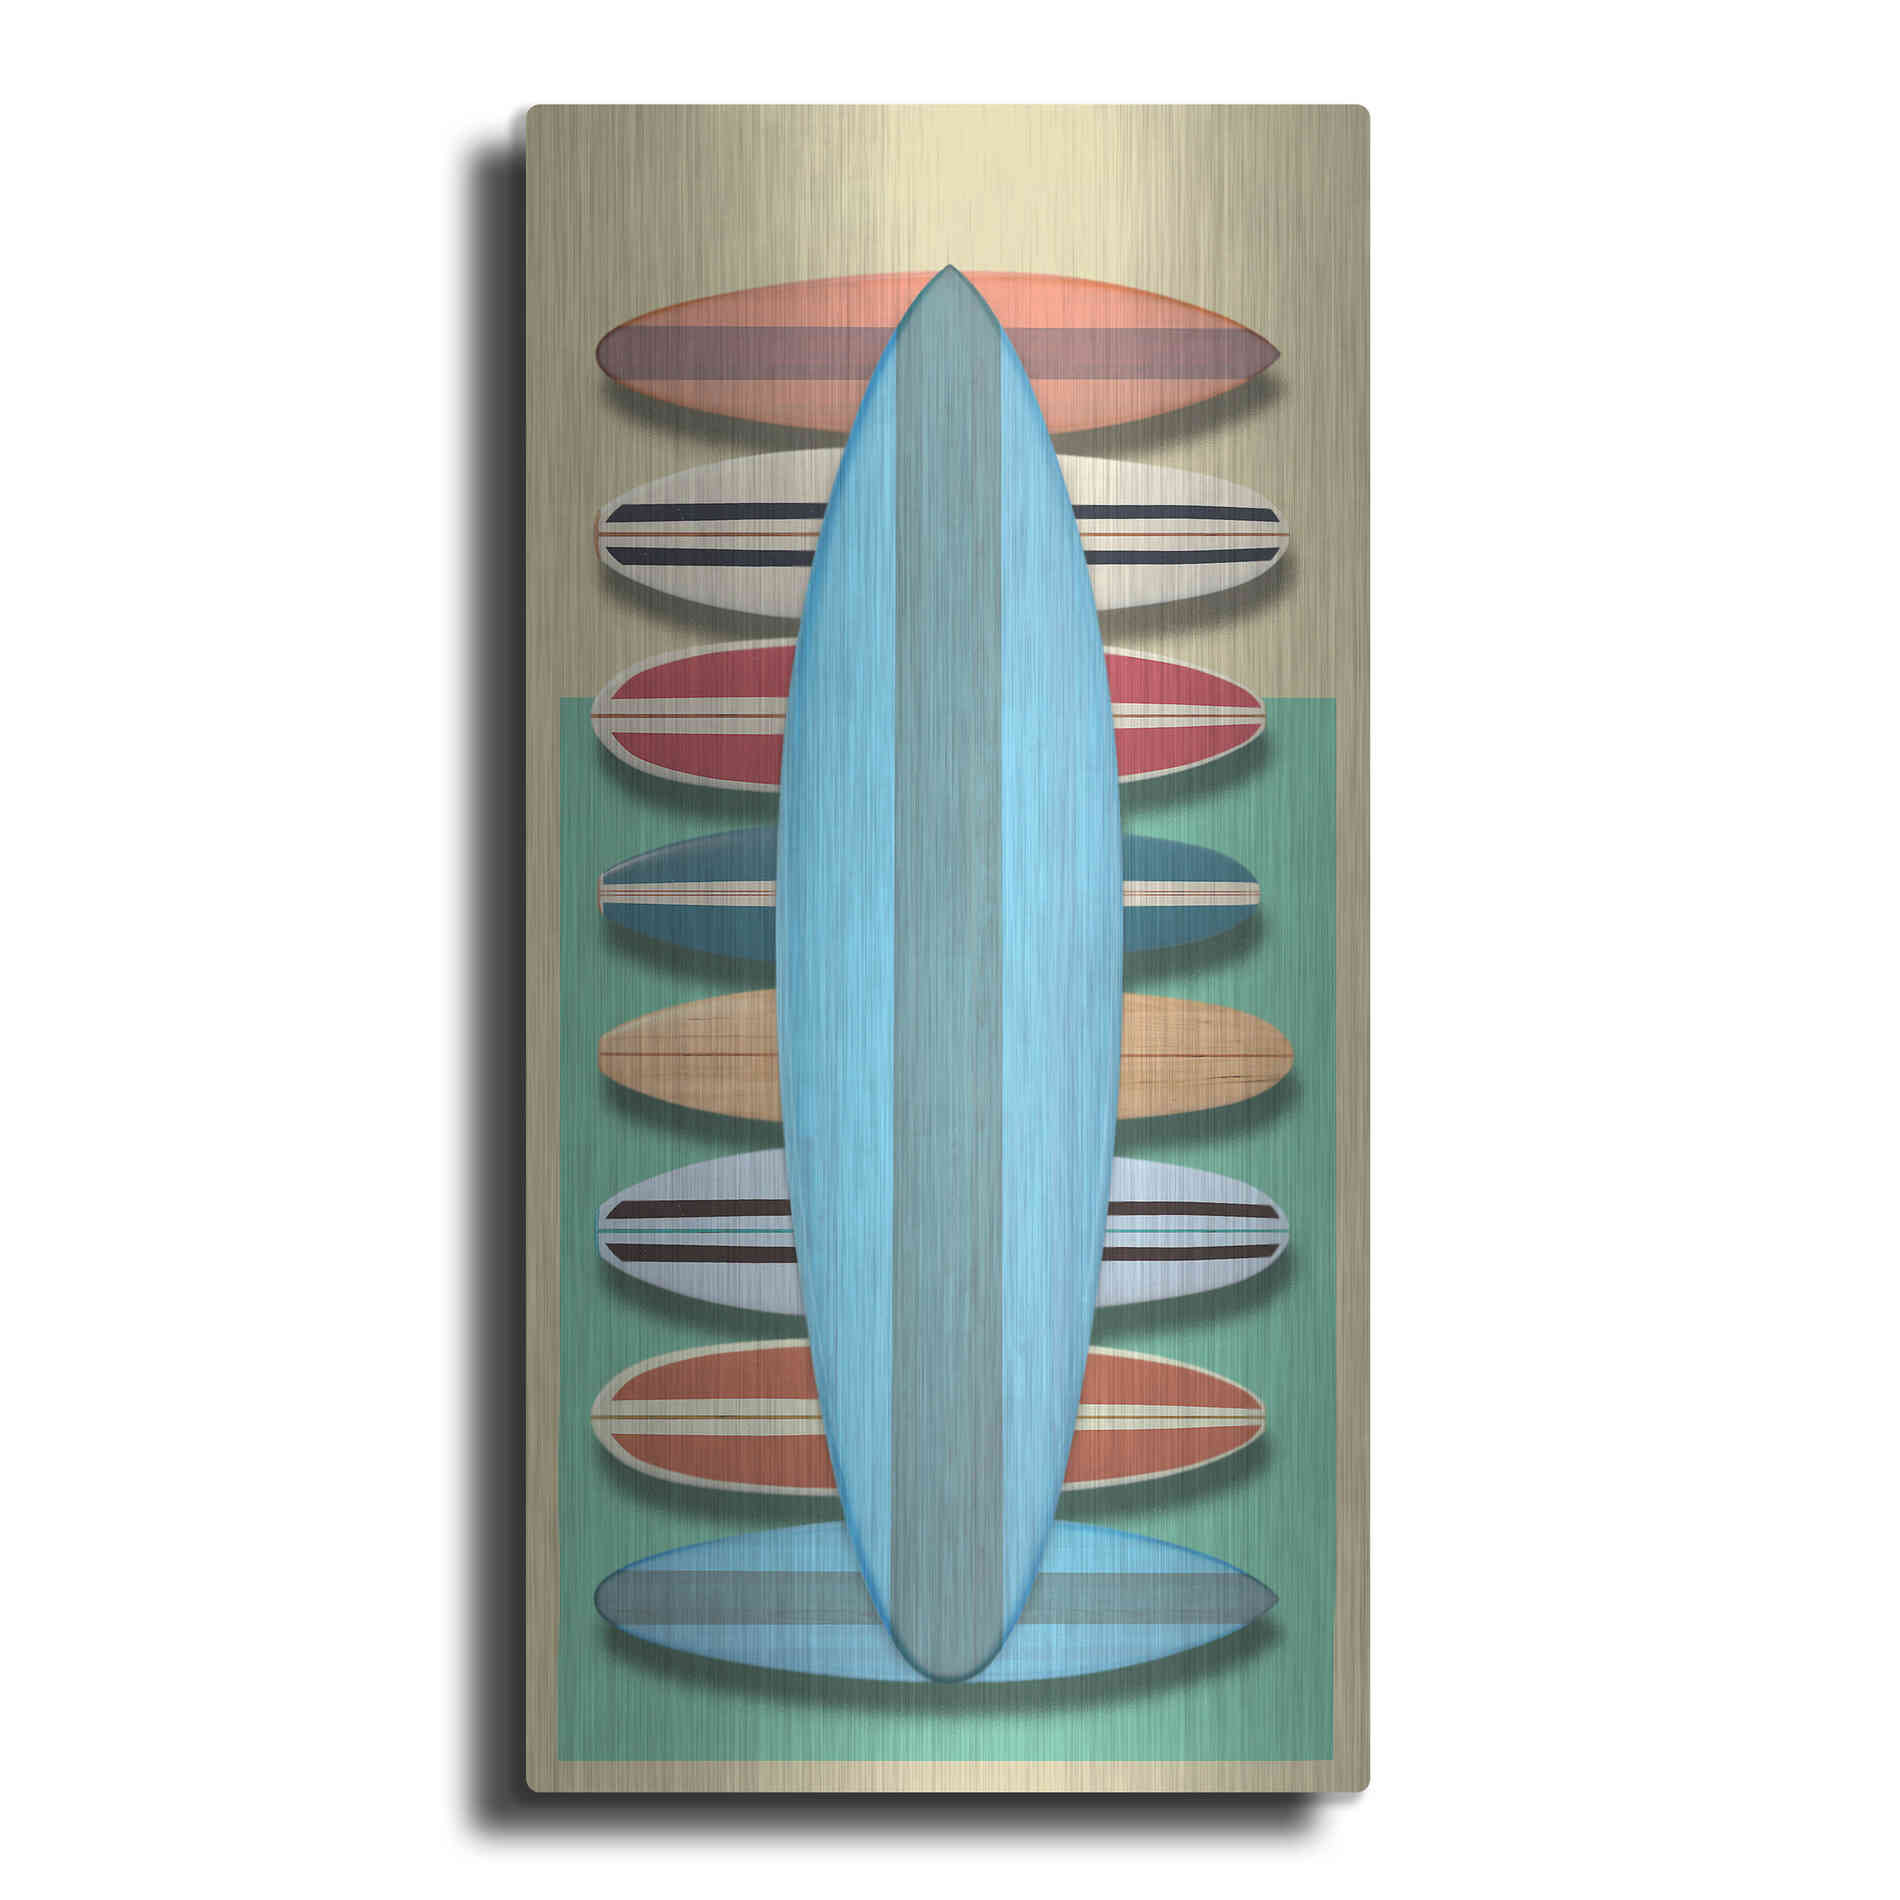 Luxe Metal Art 'Surfboards - Red' by Edward M. Fielding, Metal Wall Art